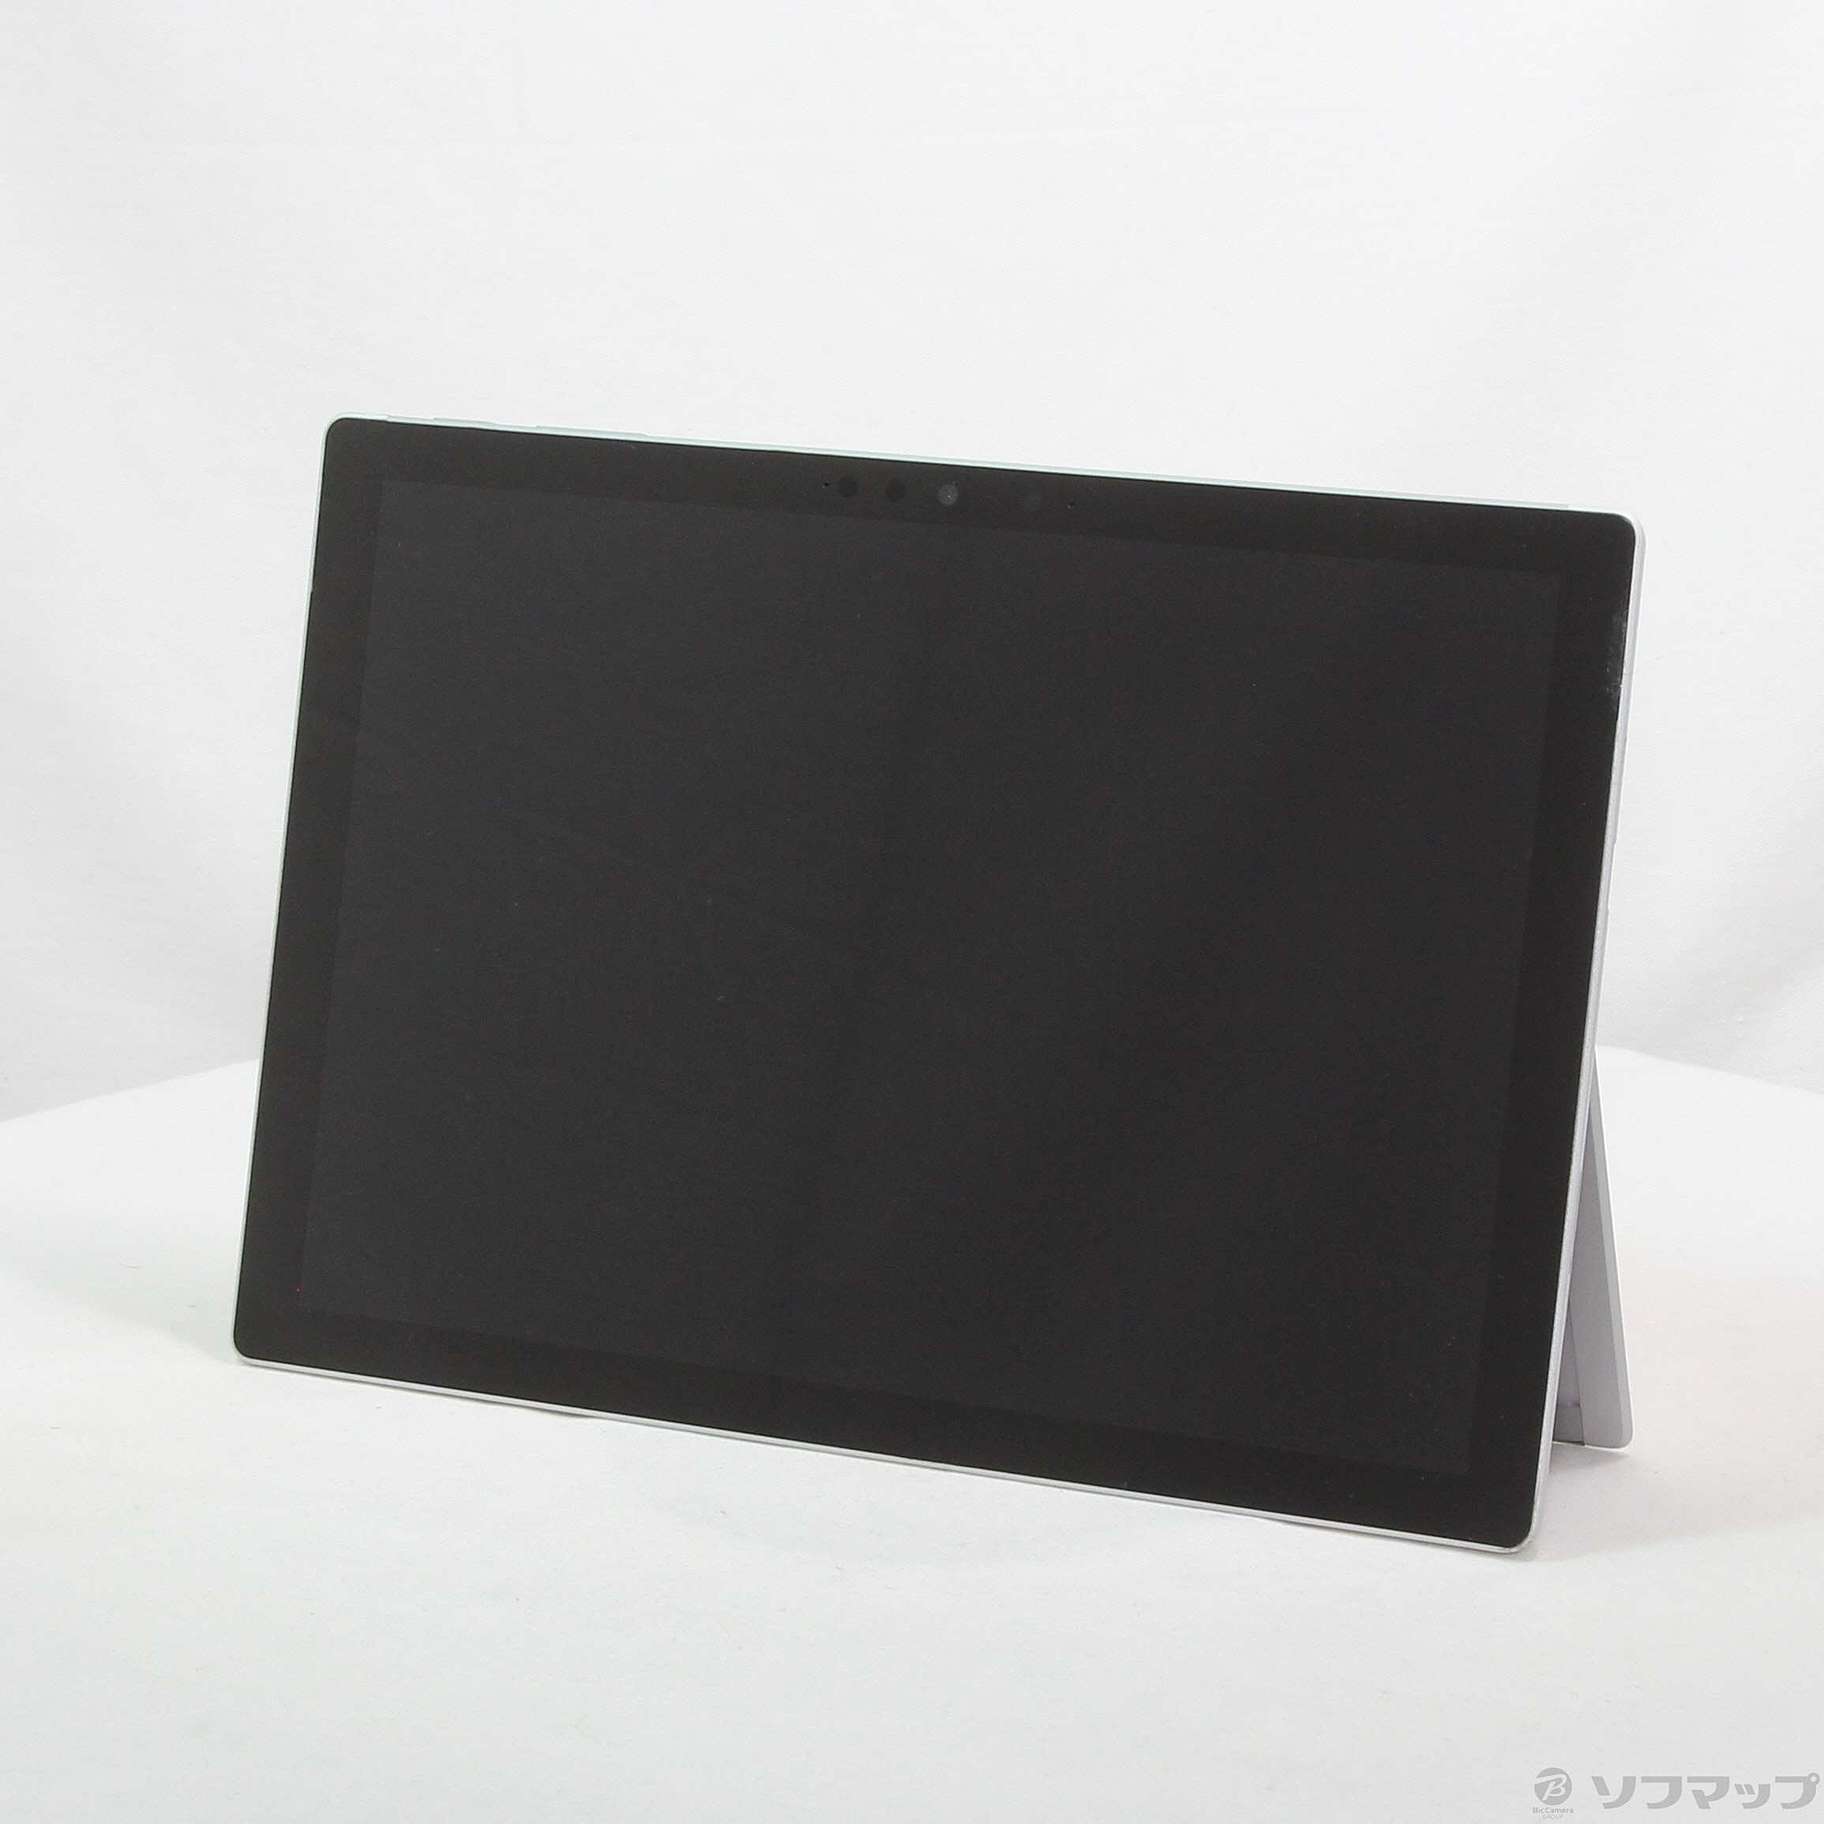 即納特価SurfacePro7 PUV-00027 Windowsタブレットブラック タブレット